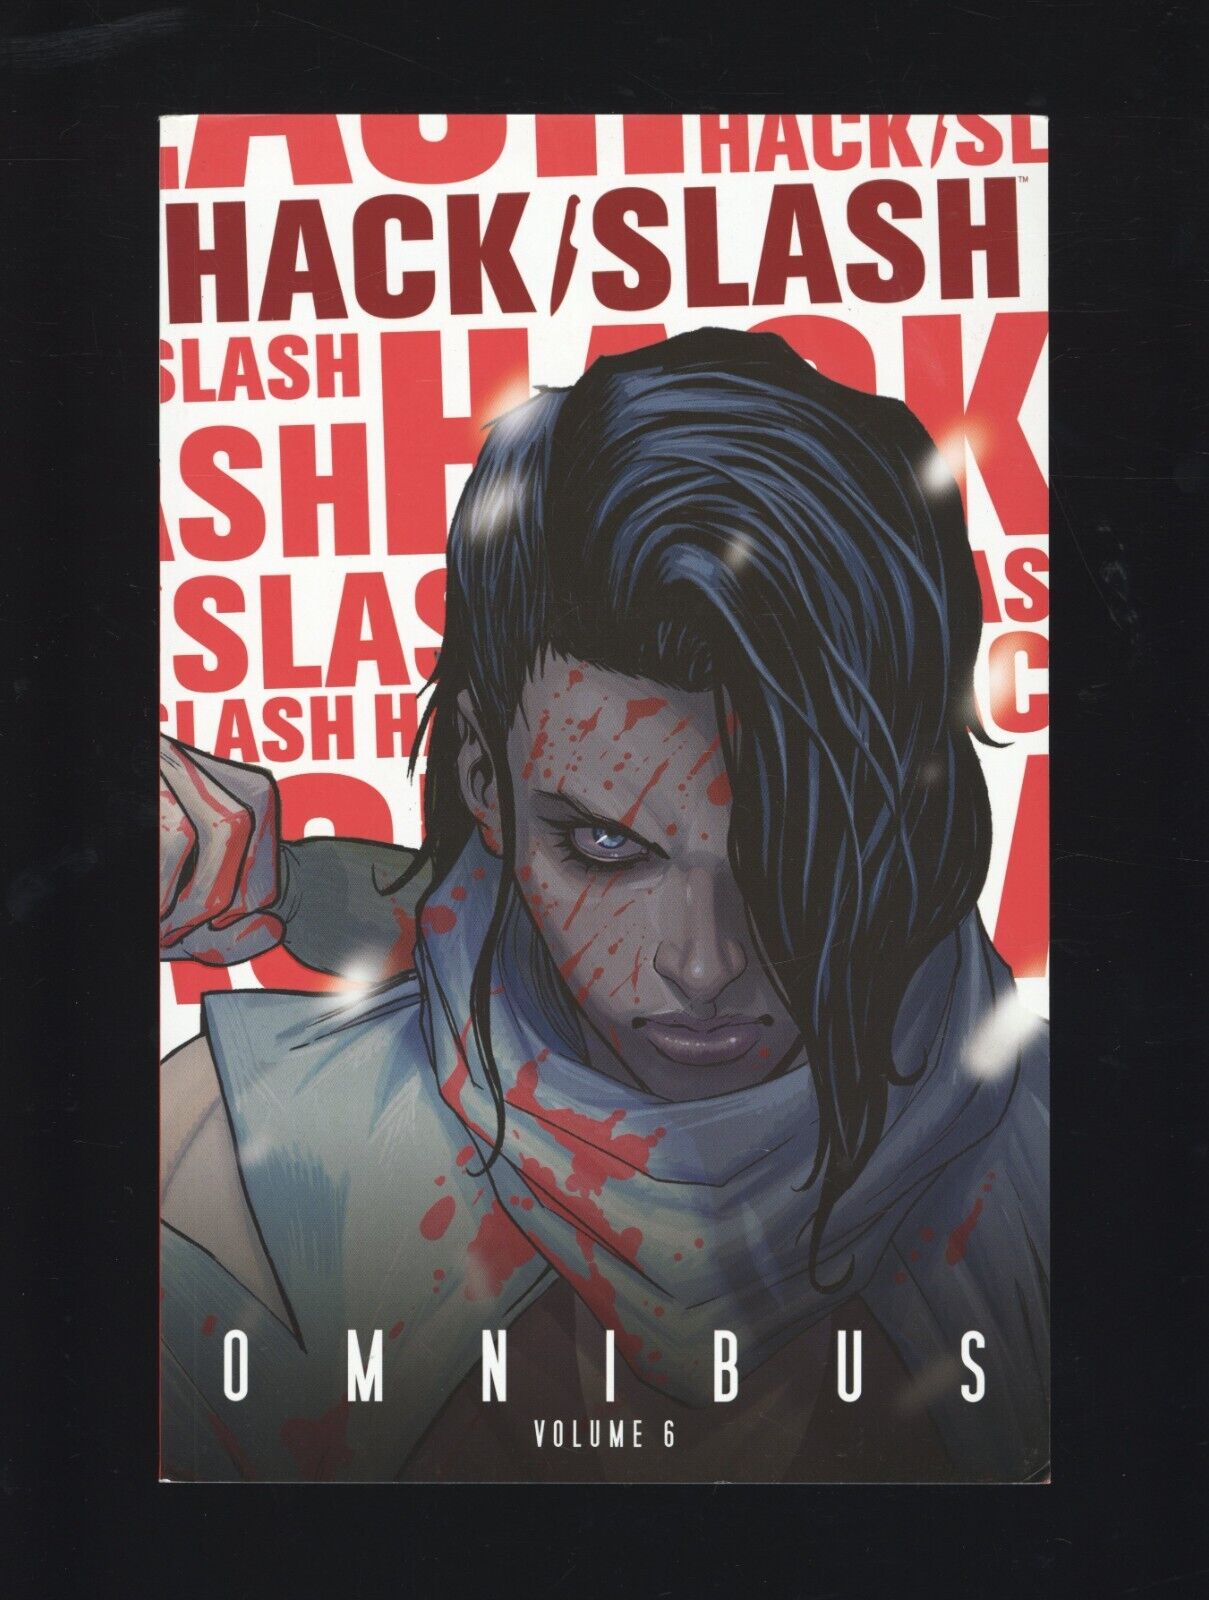 HACK / SLASH OMNIBUS VOL #6 GRAPHIC NOVEL Image Horror Comics #143B